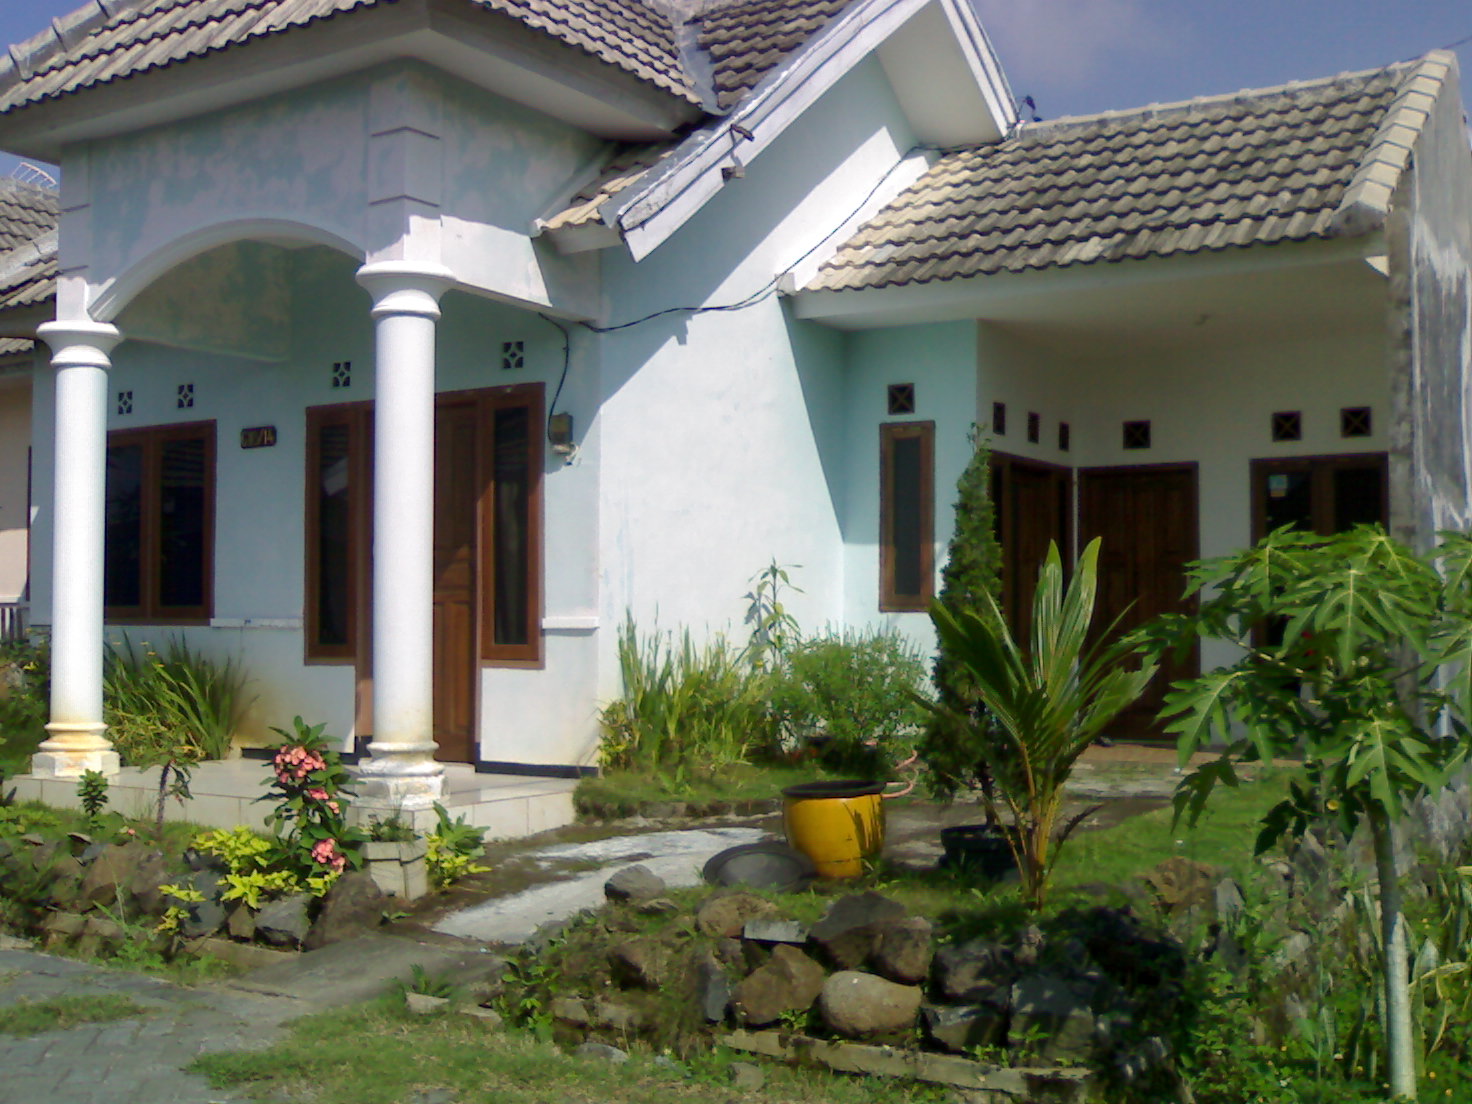 Jual Rumah di Kota  Malang  Murah  Jual Rumah di Kota  Malang  